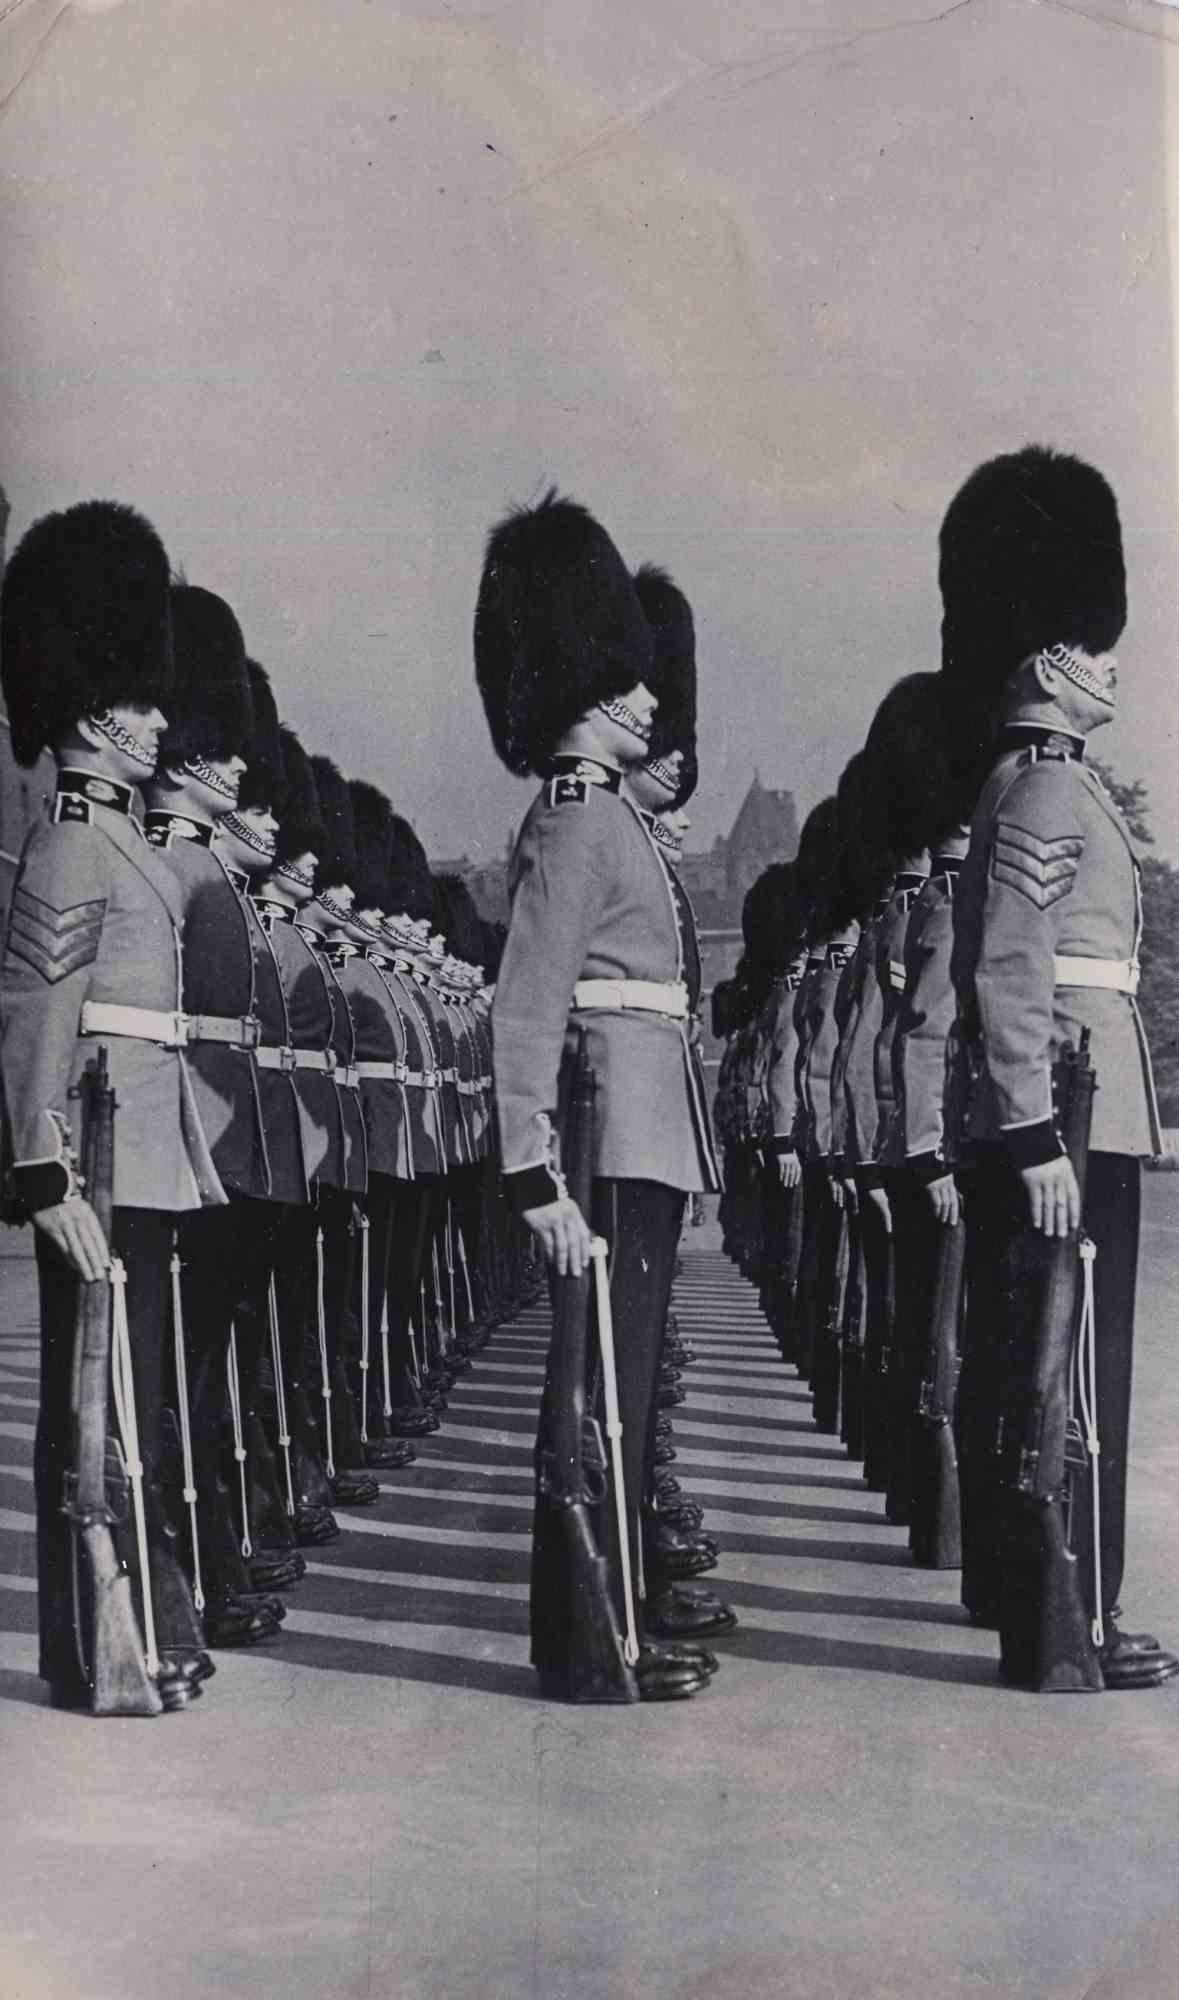 Unknown Landscape Photograph - Old days Photo - UK Royal Guard Ceremony, Keystone - Photo - 1960s